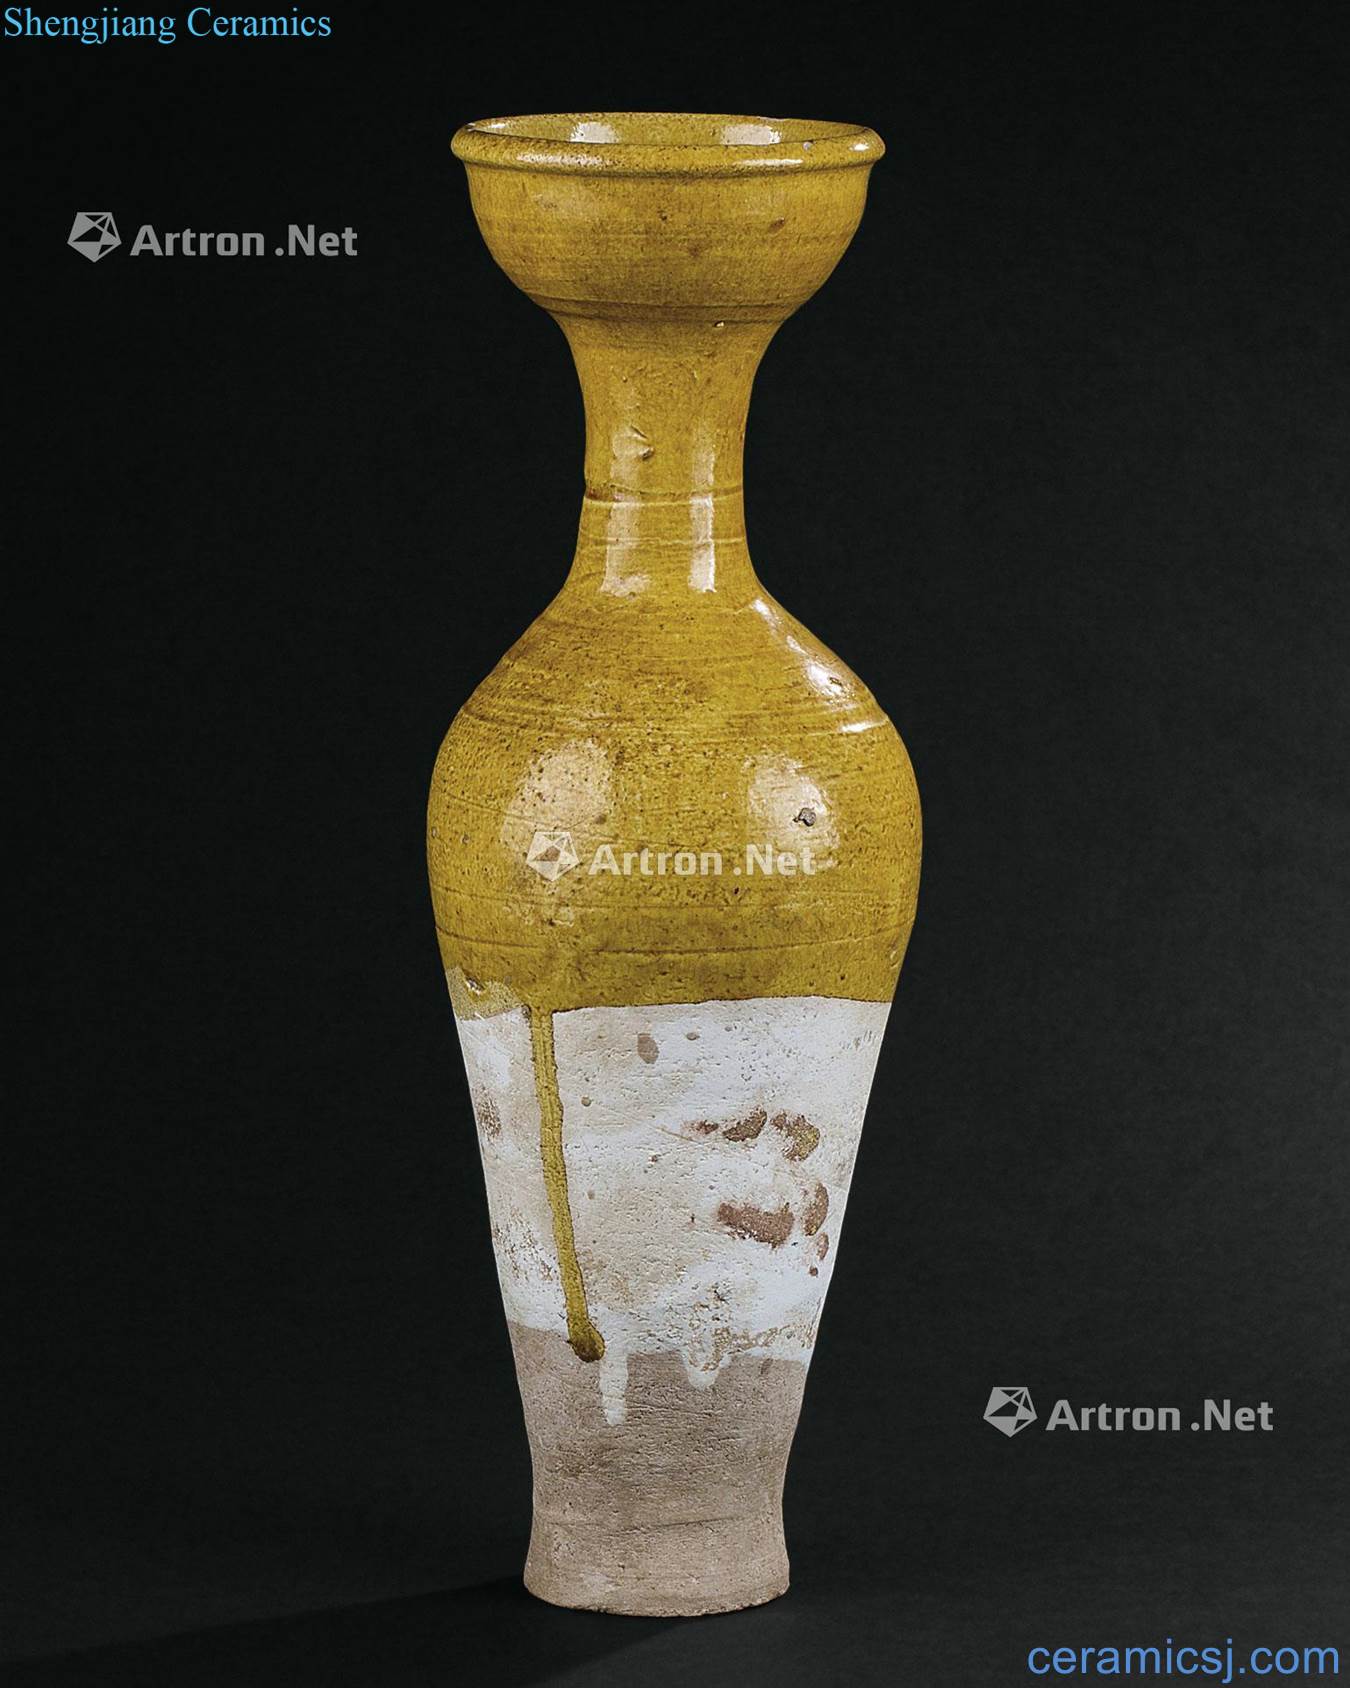 Liao dynasty (916-1125), yellow glazed flask